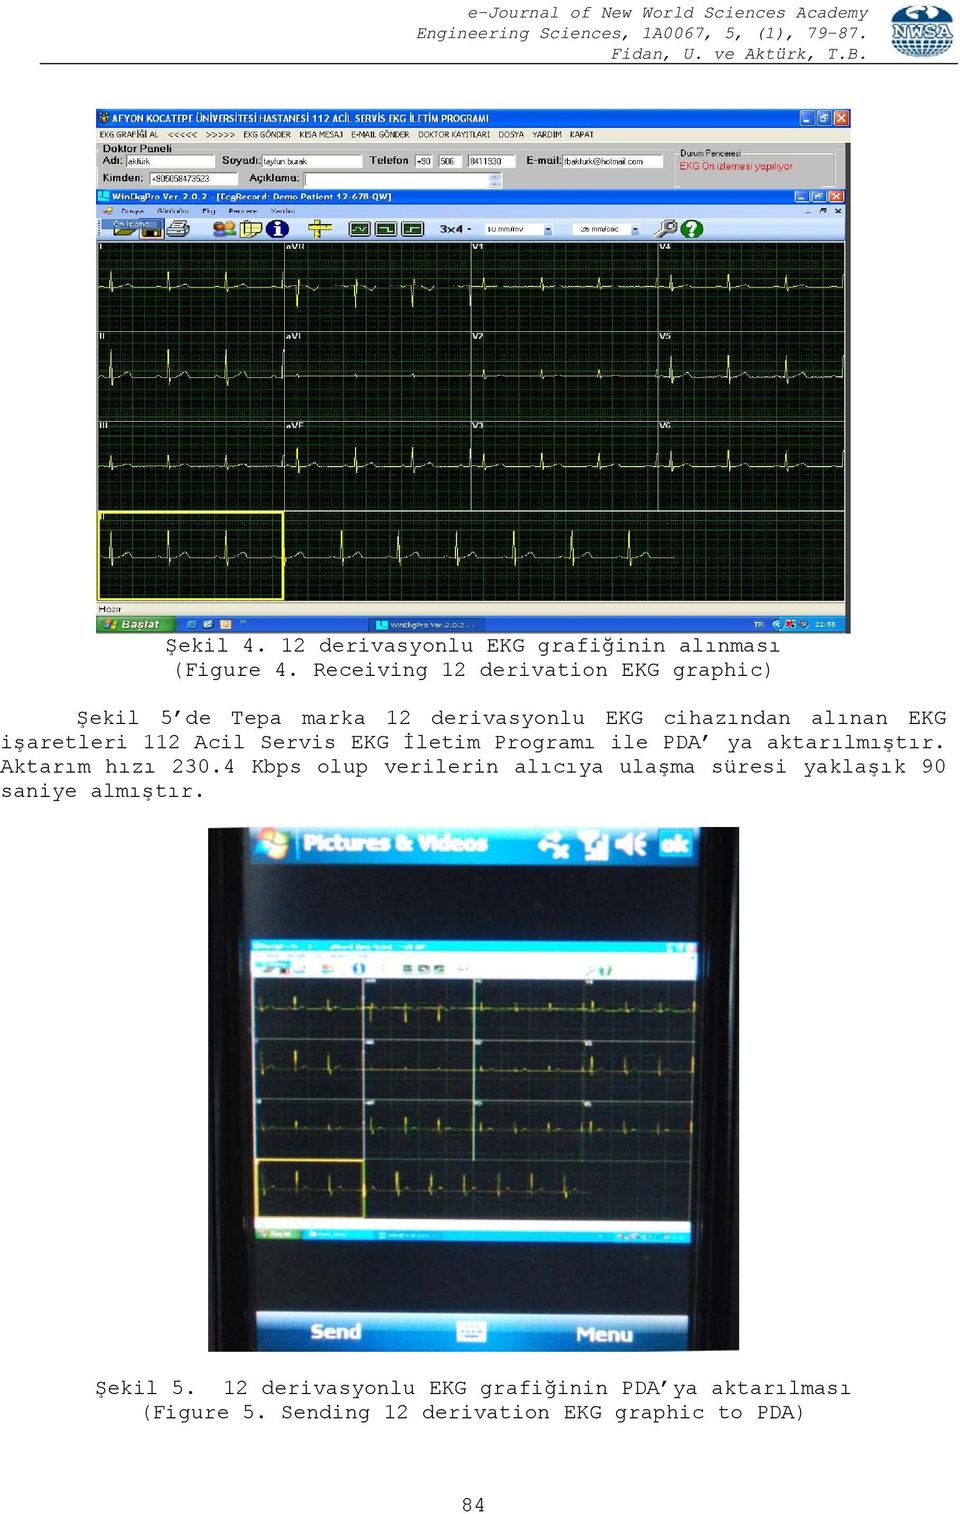 işaretleri 112 Acil Servis EKG İletim Programı ile PDA ya aktarılmıştır. Aktarım hızı 230.